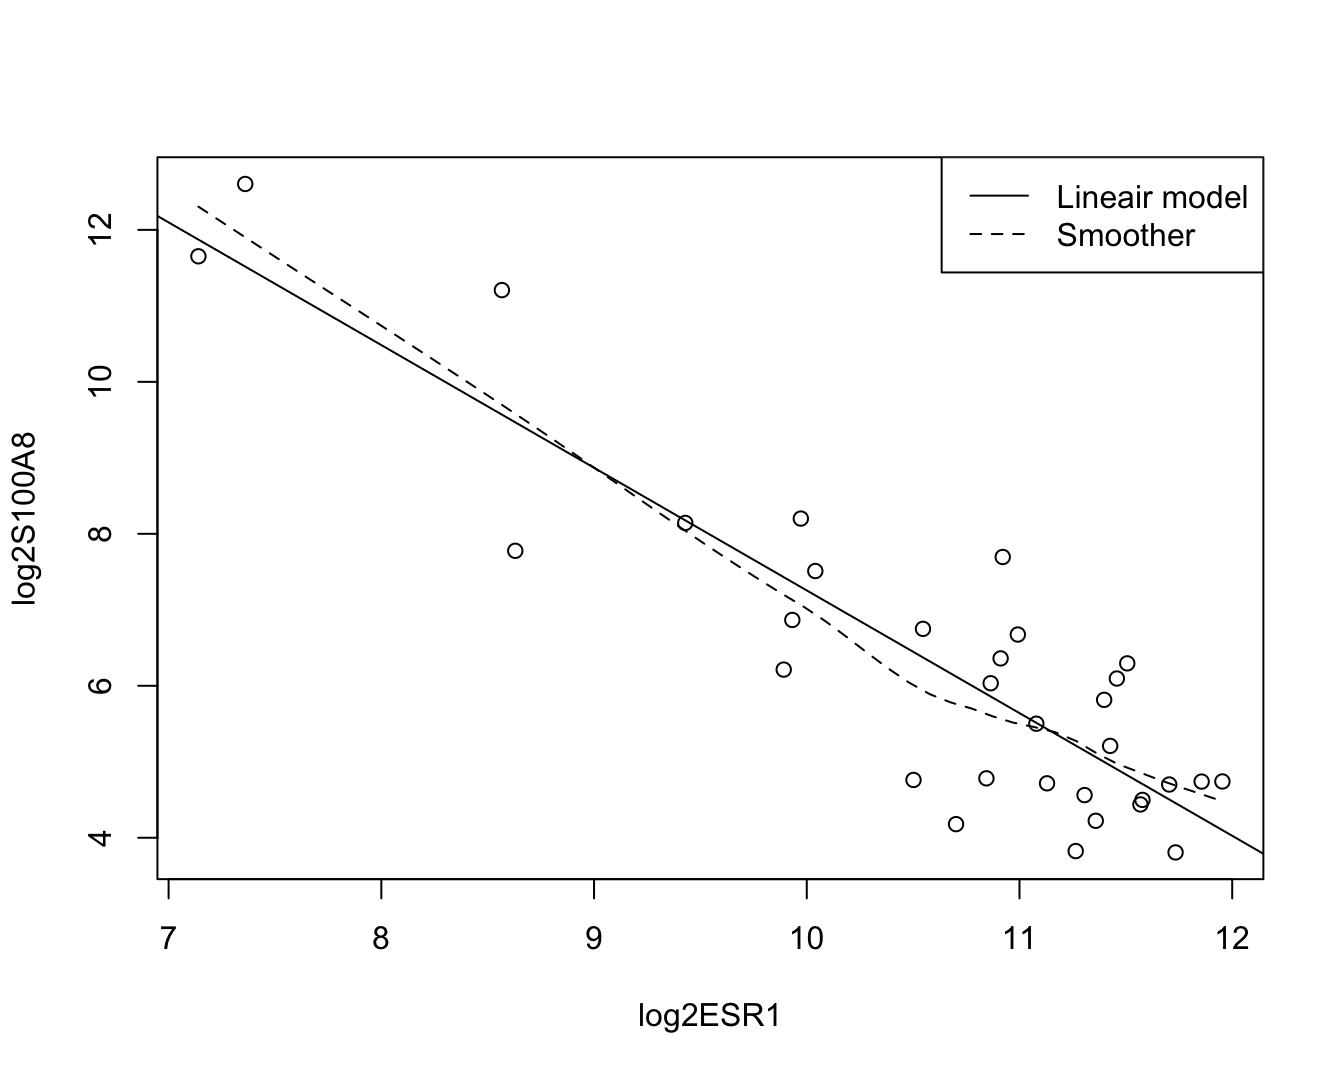 Scatterplot voor log2-S100A8 expressie in functie van de log2-ESR1 expressie met smoother en lineair model die het verband tussen beide genen samenvatten (outliers worden niet langer verwijderd uit de dataset).